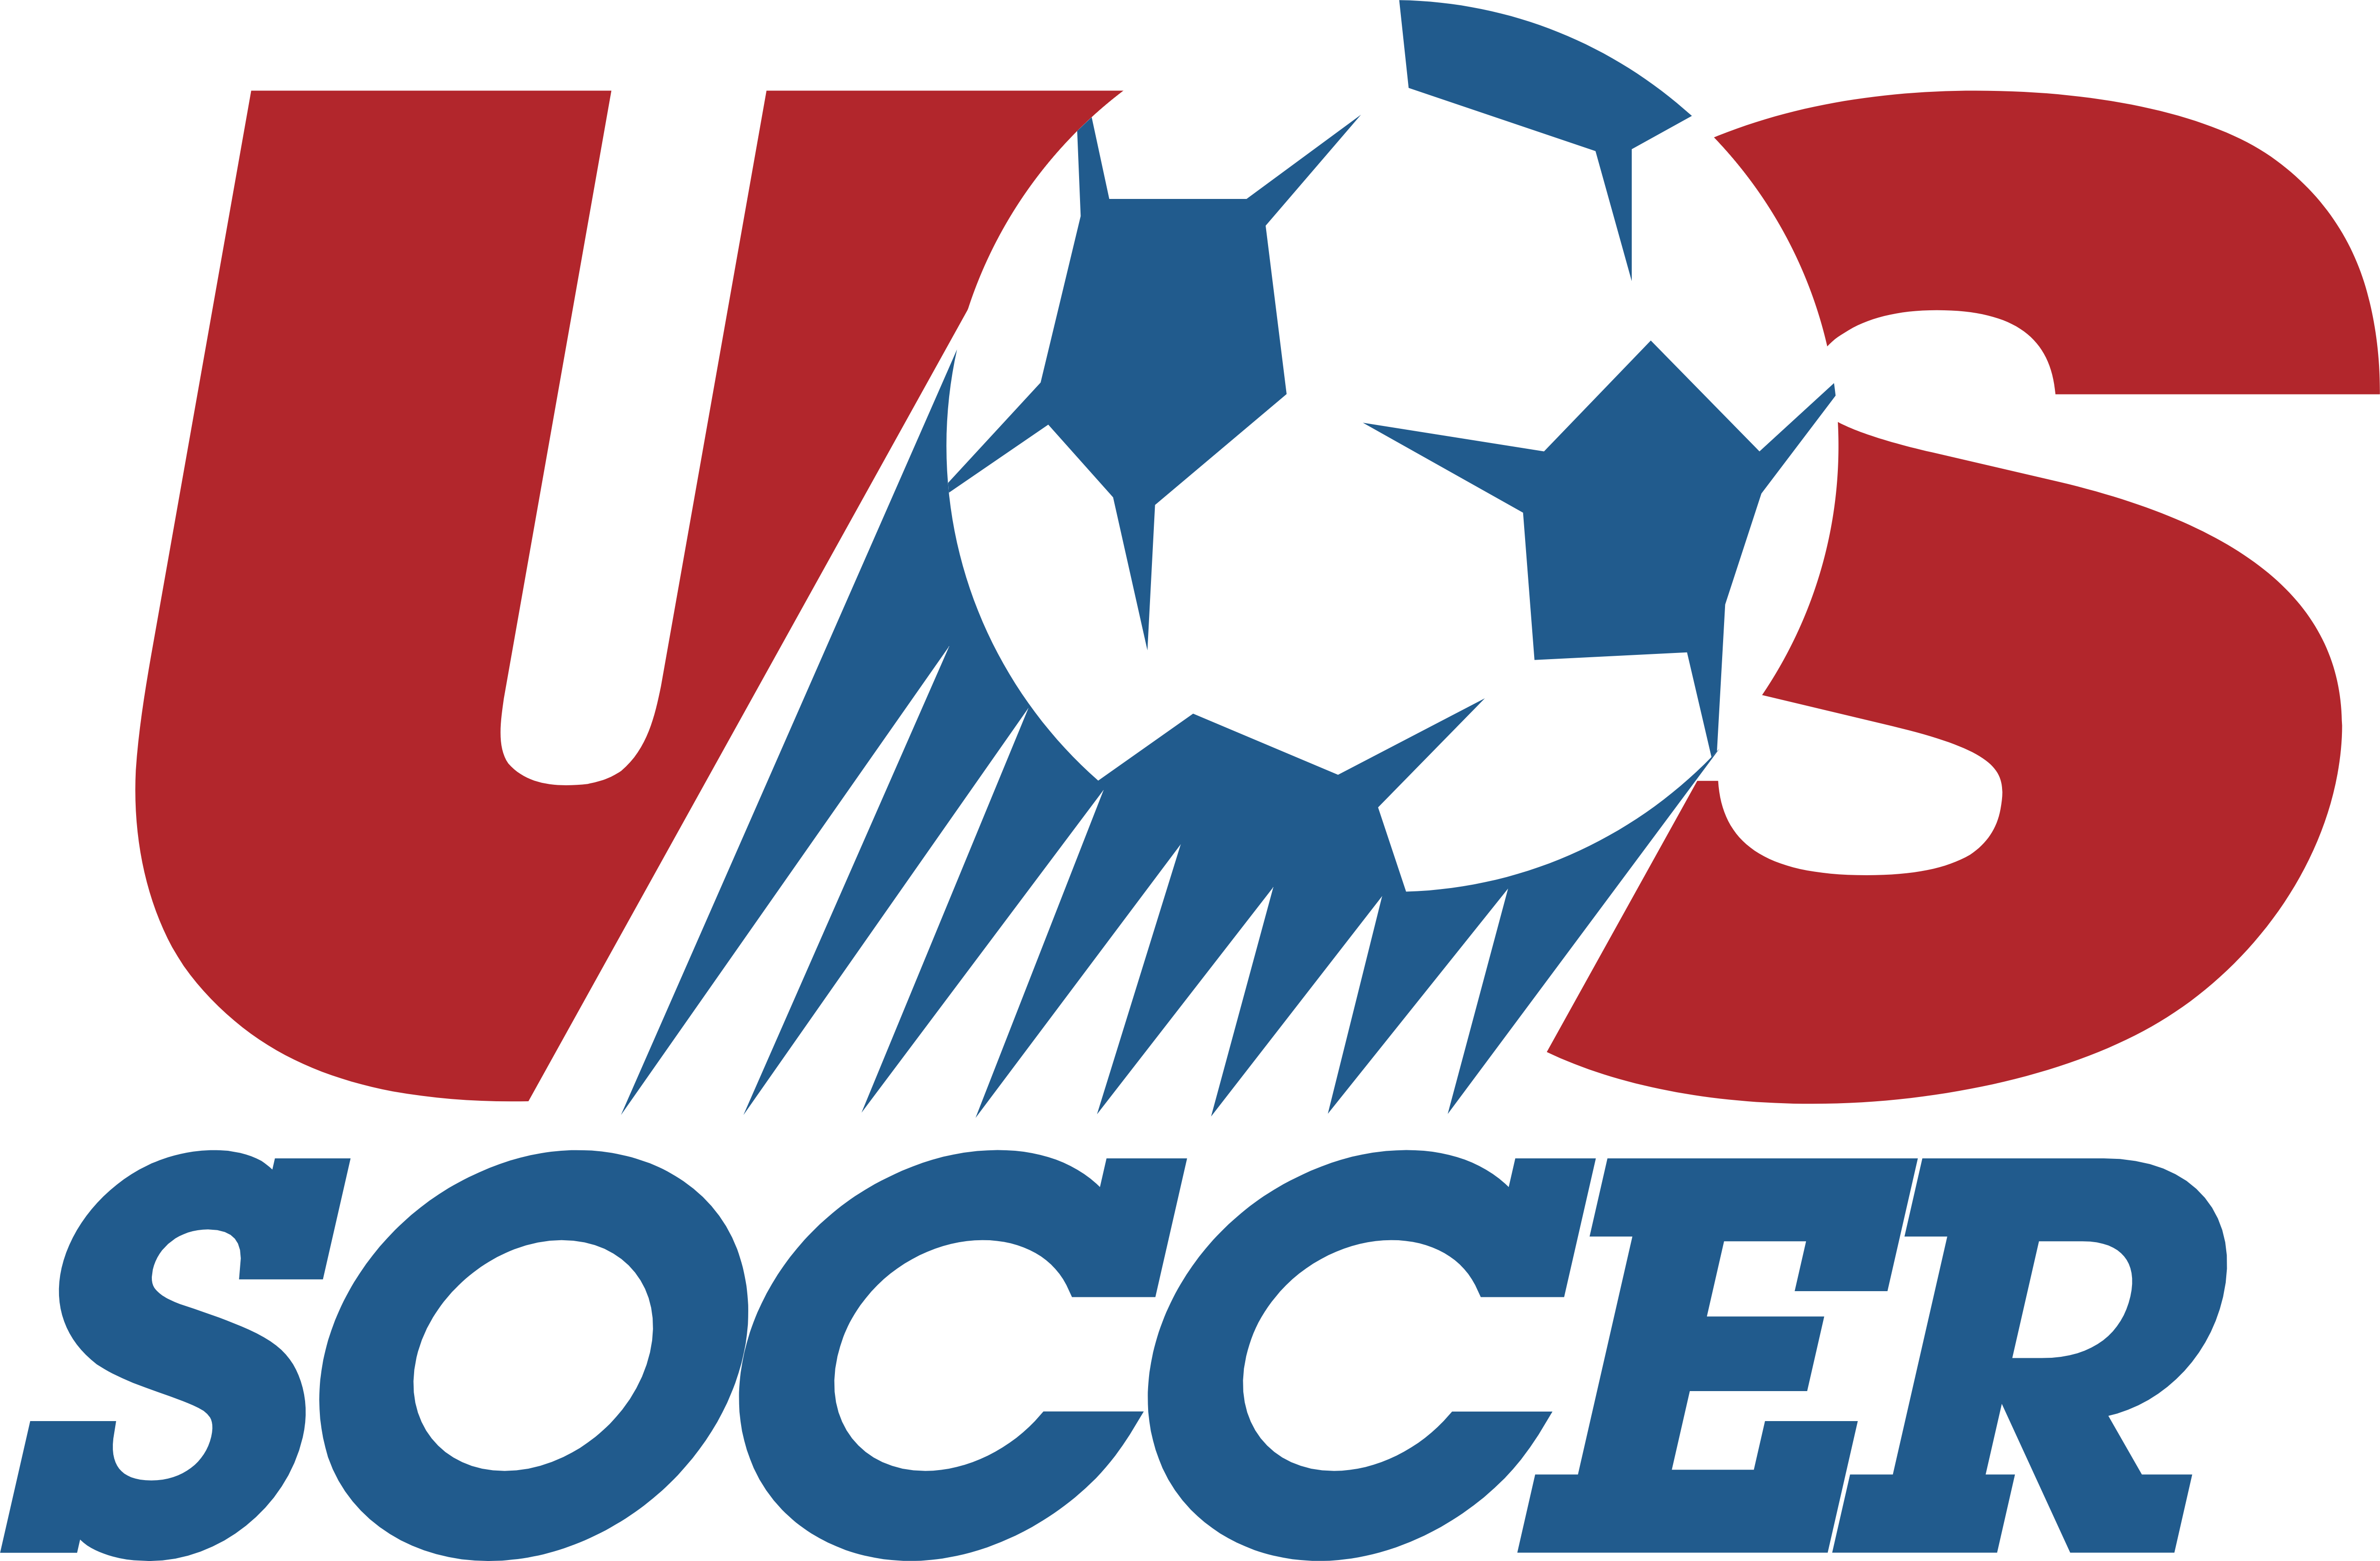 USA Soccer – Logos Download